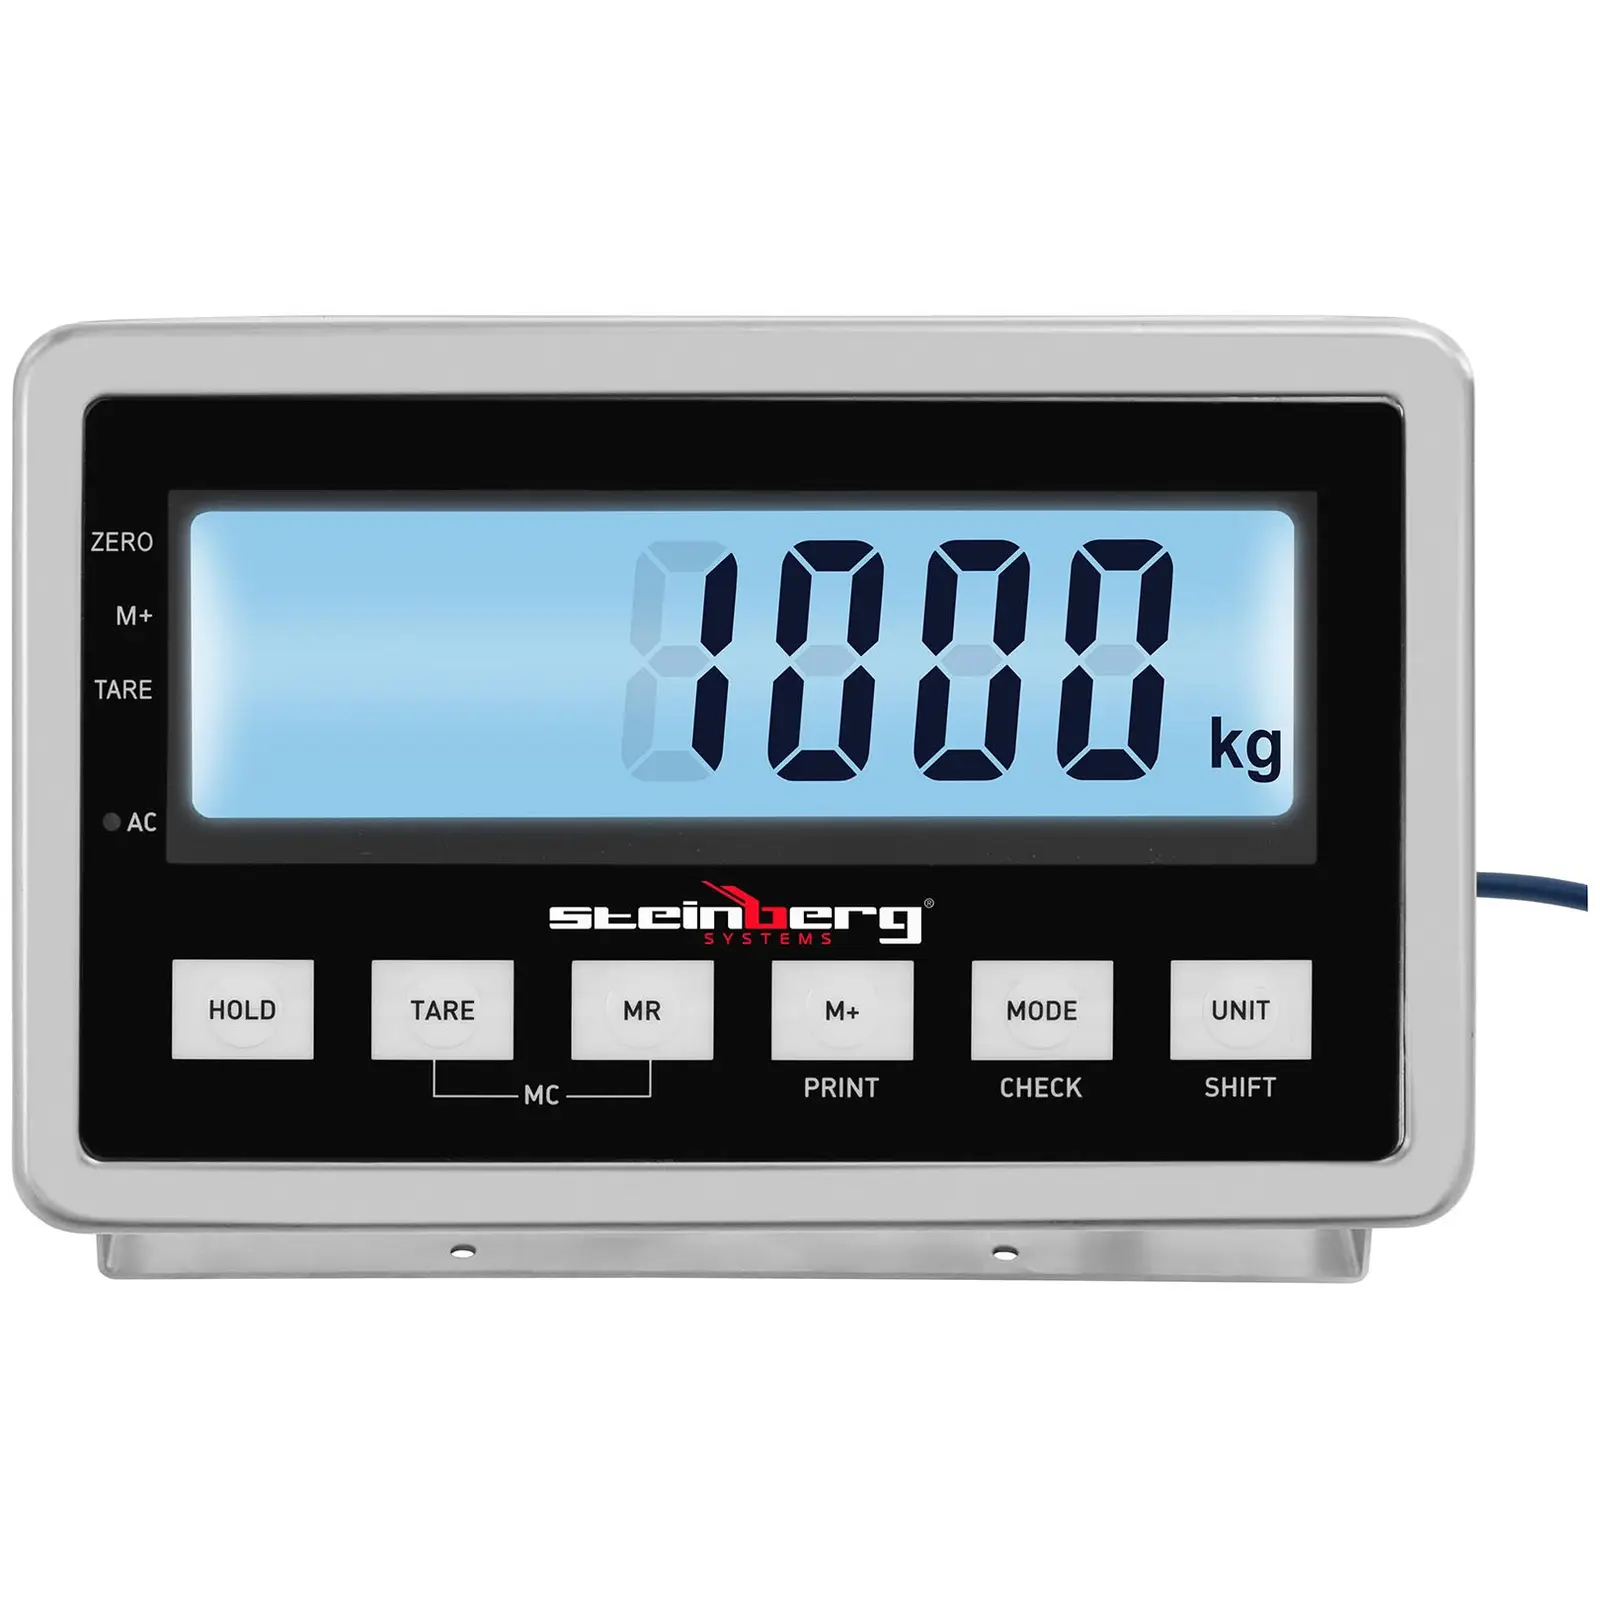 Talna tehtnica - 1000 kg / 0,2 kg - 1200 x 1200 mm - LCD